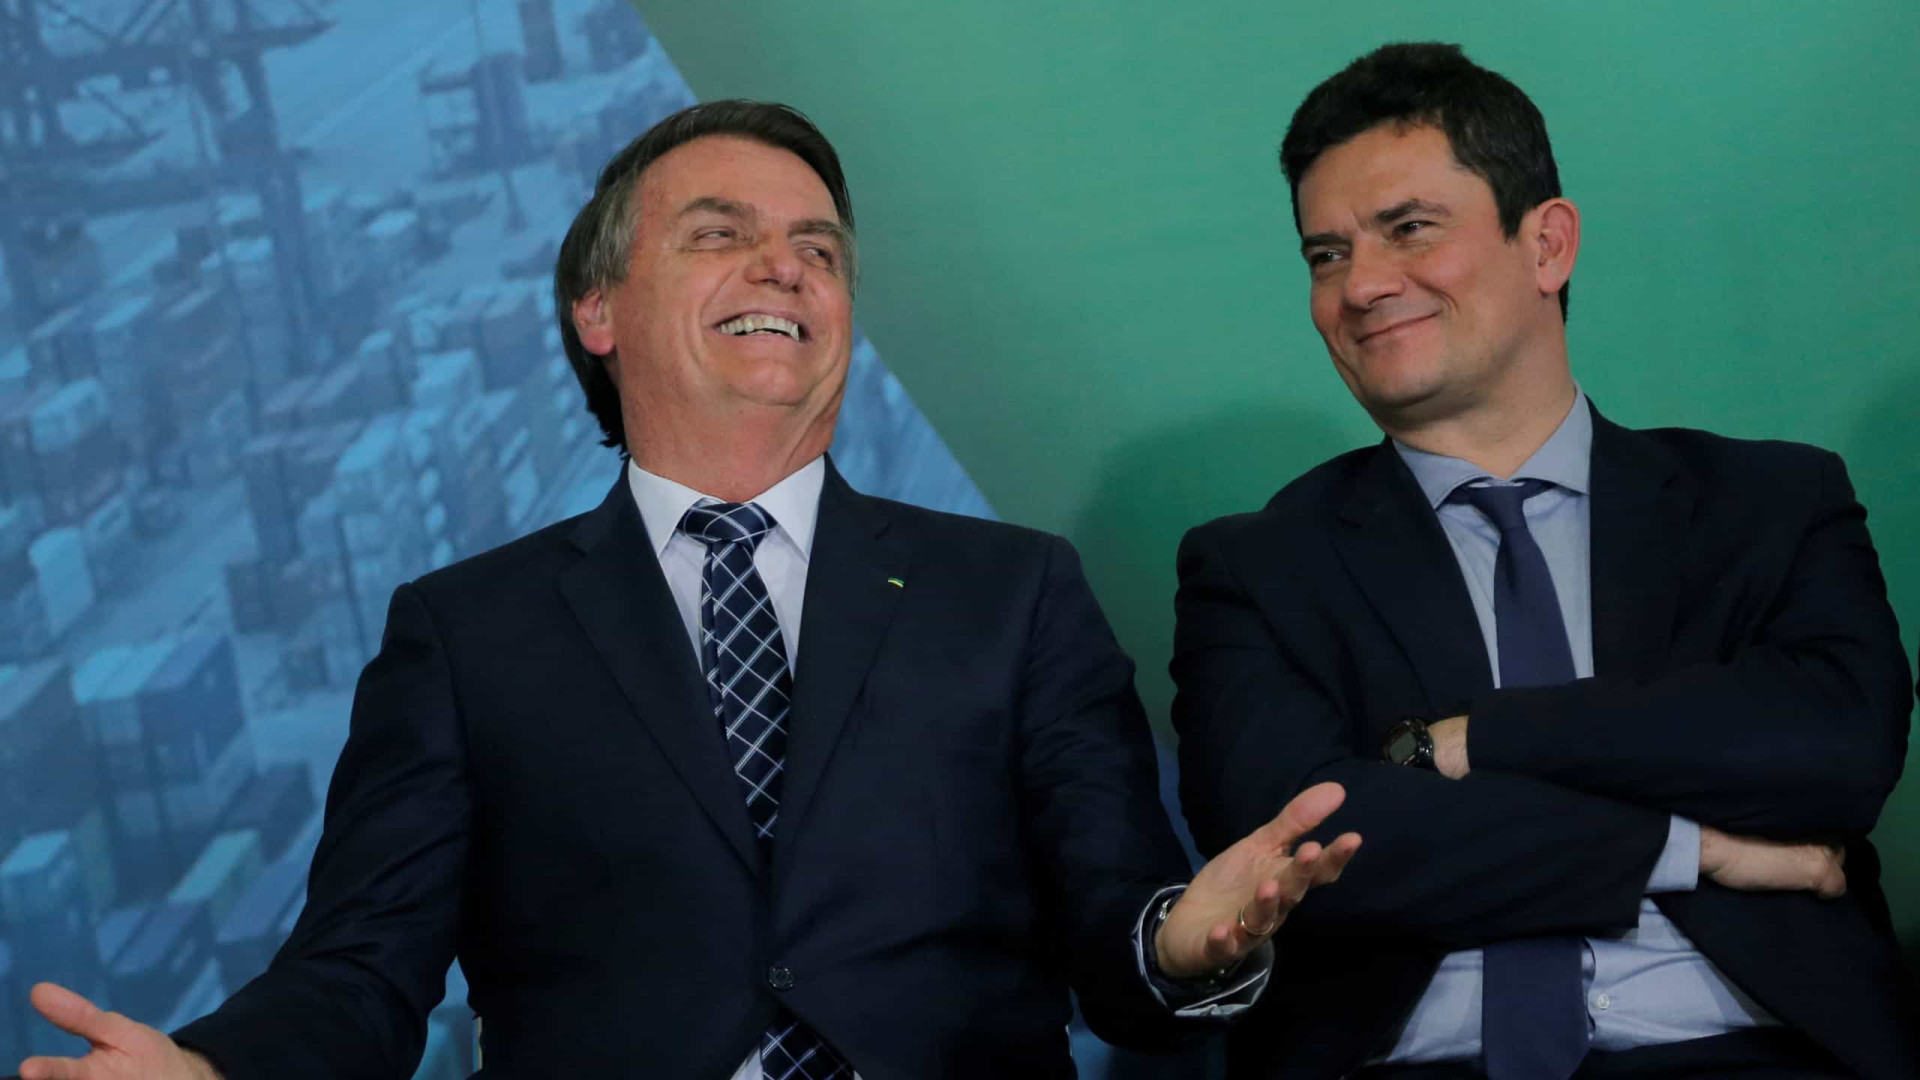 Moro sobe em popularidade nas redes e se aproxima de Bolsonaro